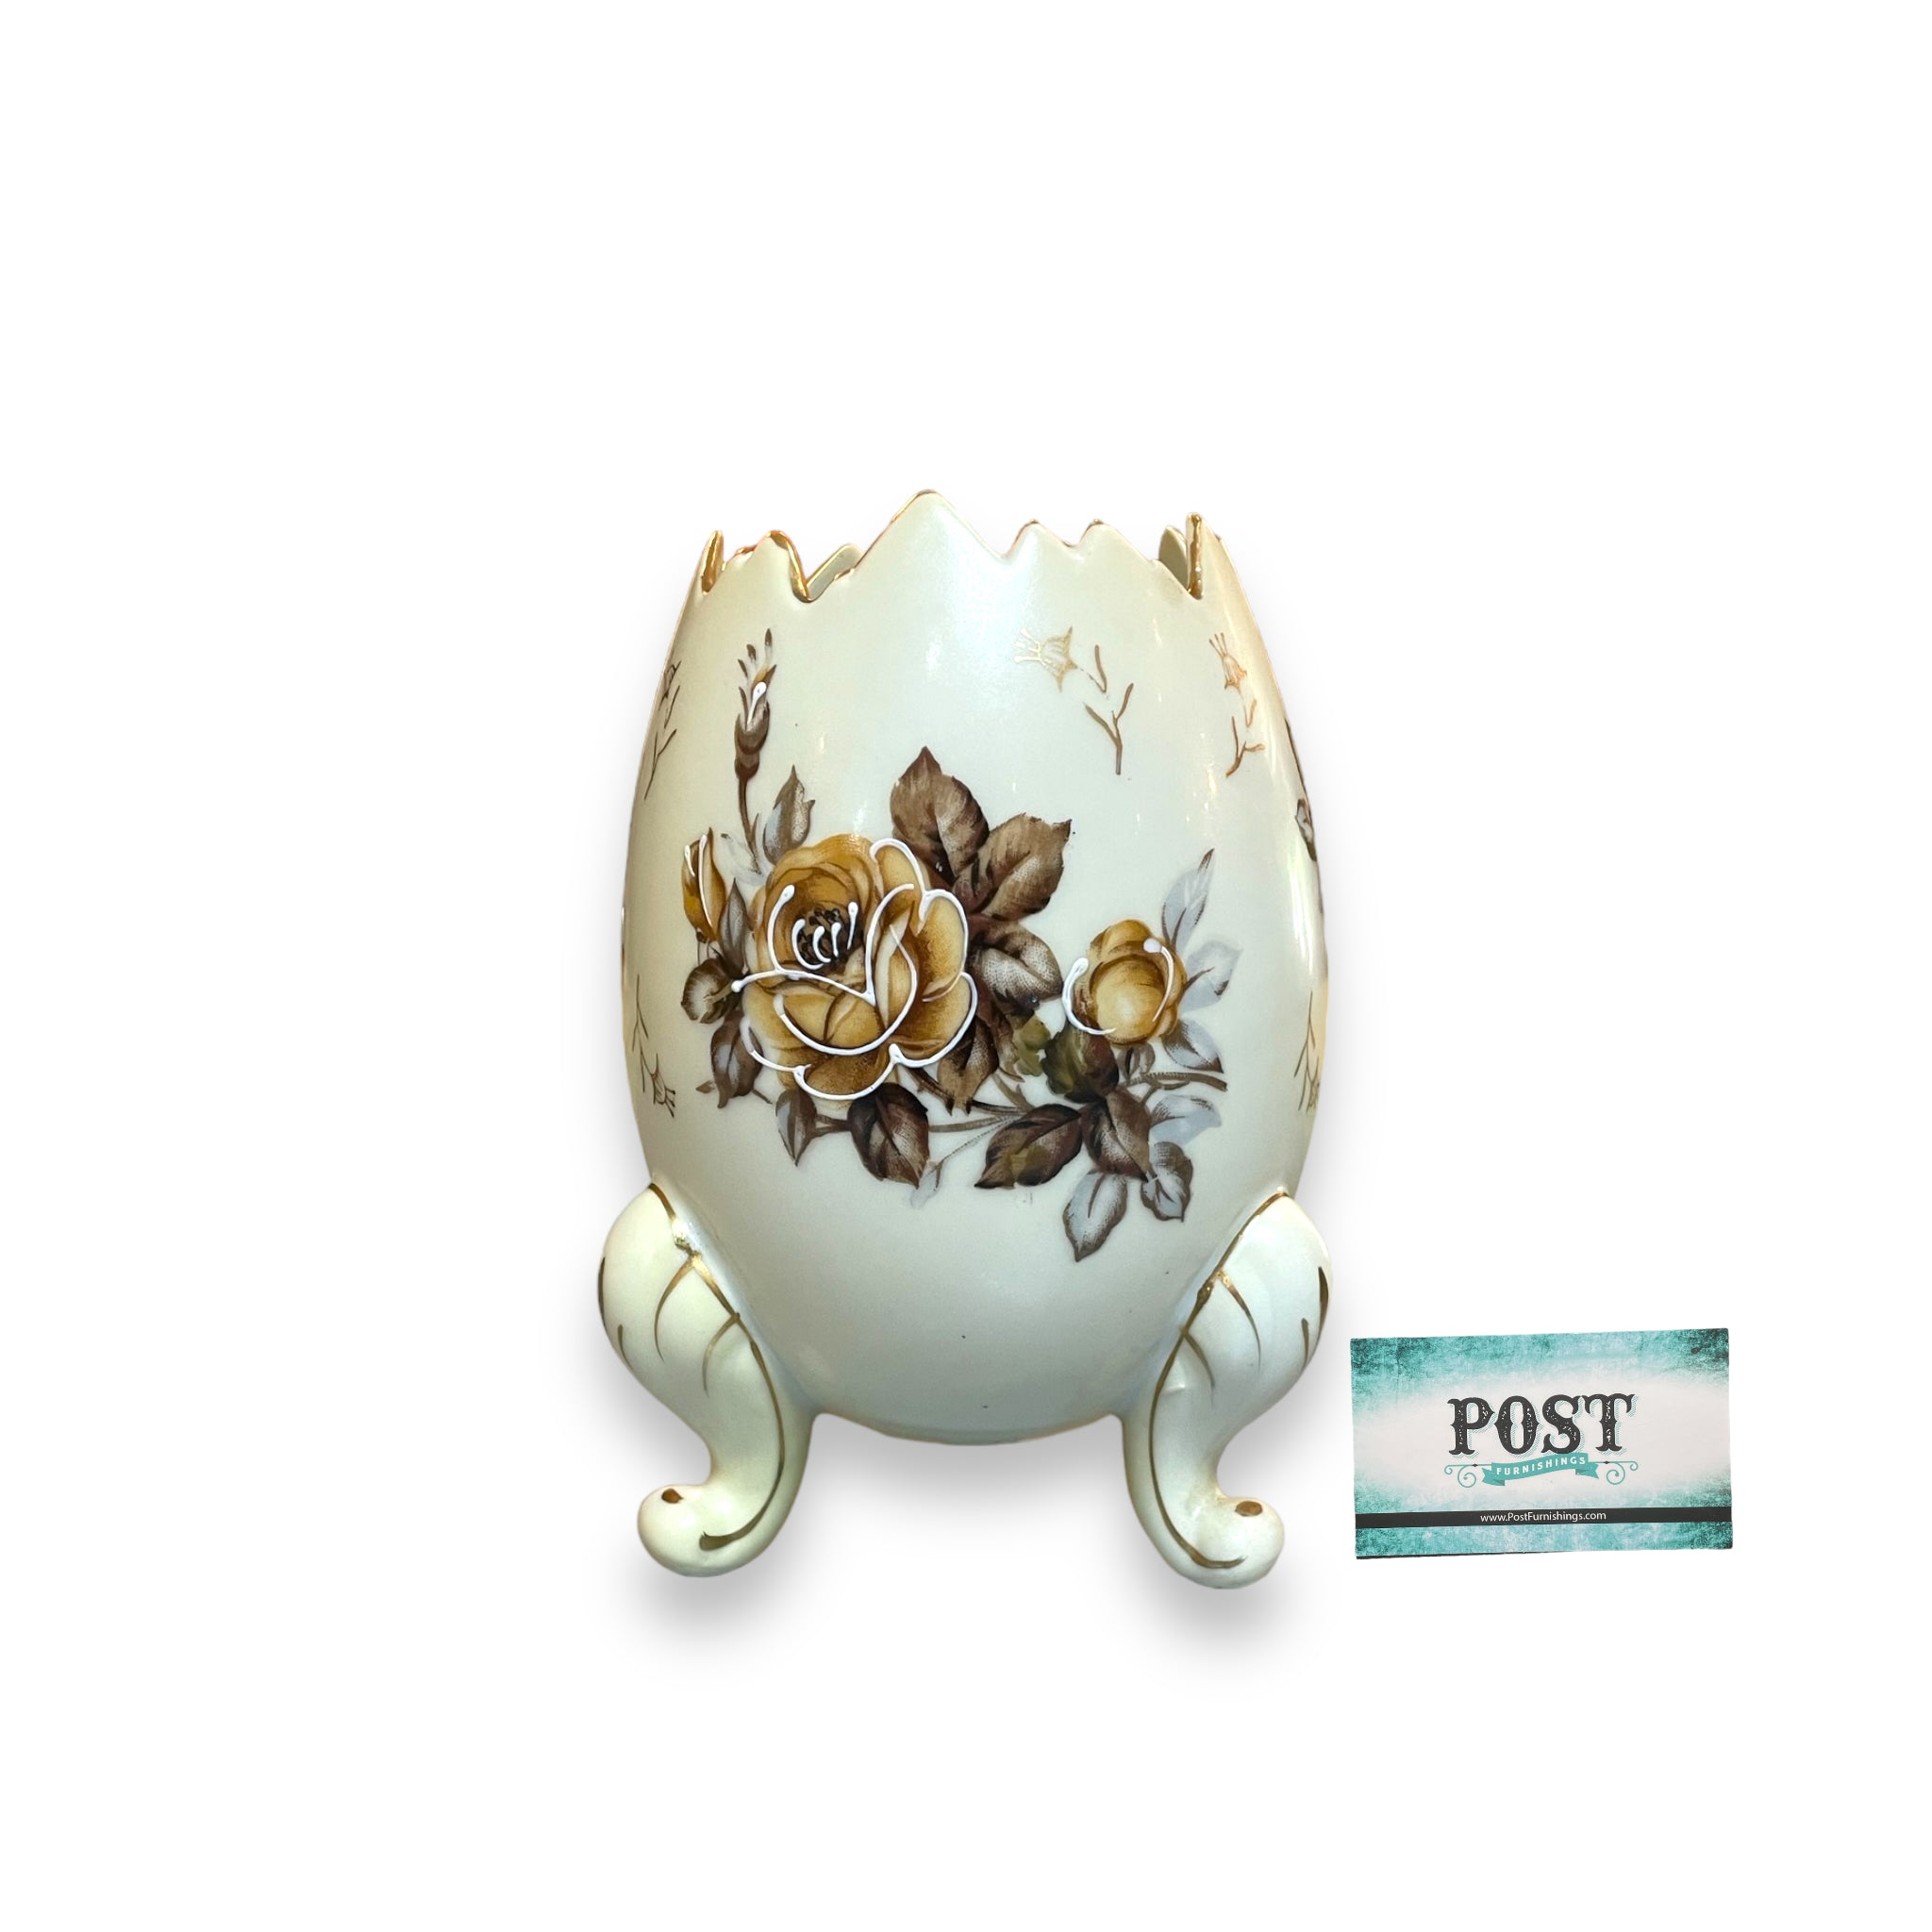 Vintage 3 Footed Egg Vase